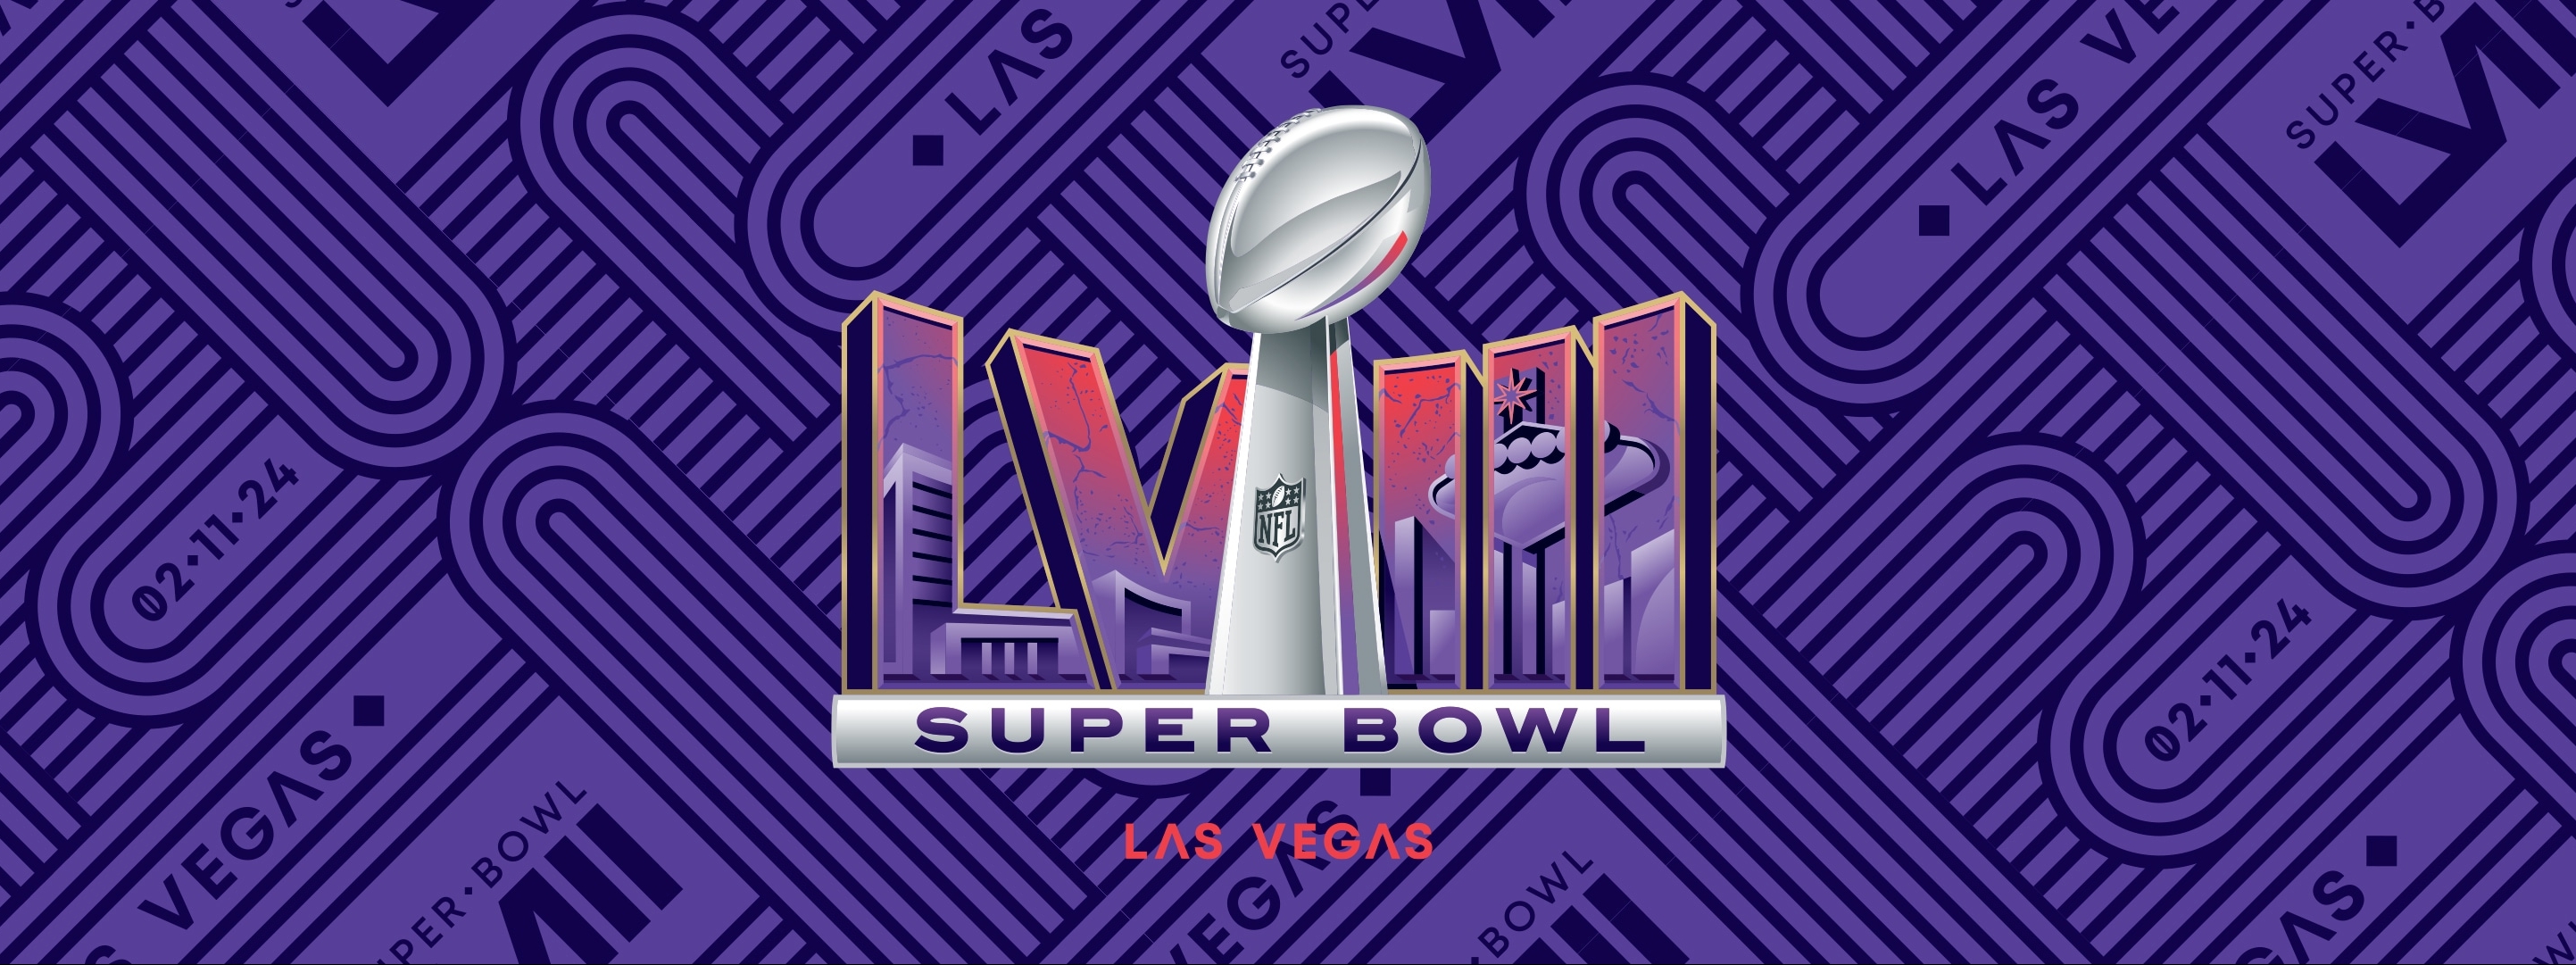 Esta es la imagen del logo para la edición del Super Bowl de este año que dio origen a las teorías de conspiración. (Foto Prensa Libre: NFL)